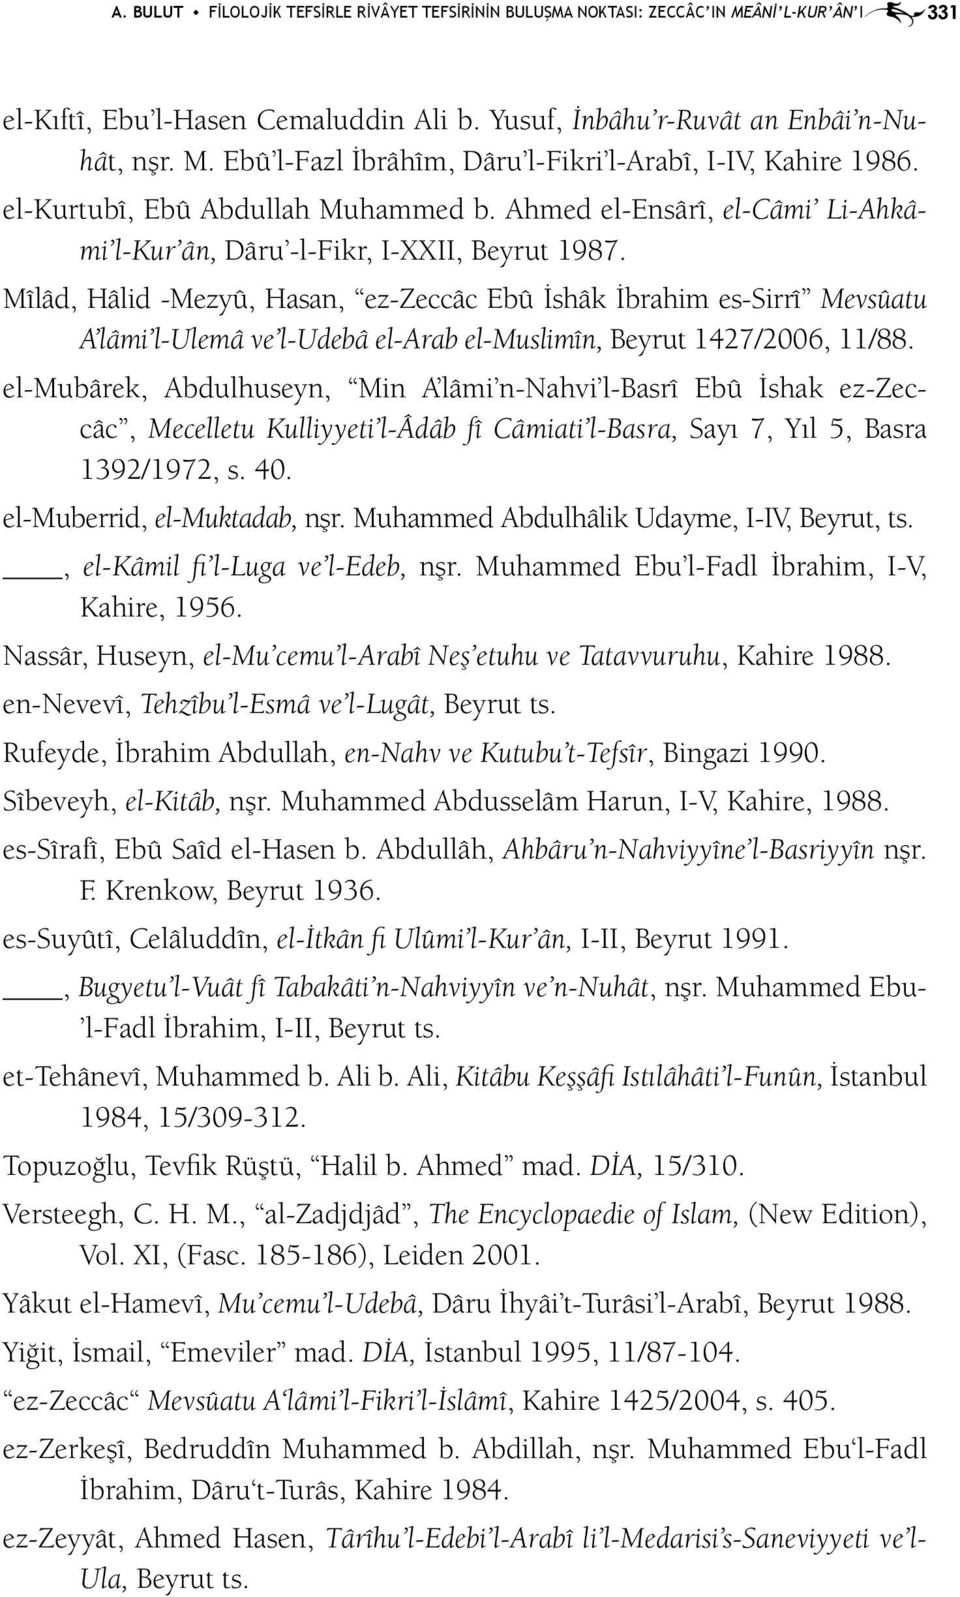 Mîlâd, Hâlid -Mezyû, Hasan, ez-zeccâc Ebû İshâk İbrahim es- Sirrî Mevsûatu A lâmi l- Ulemâ ve l-udebâ el-arab el-muslimîn, Beyrut 1427/2006, 11/88.